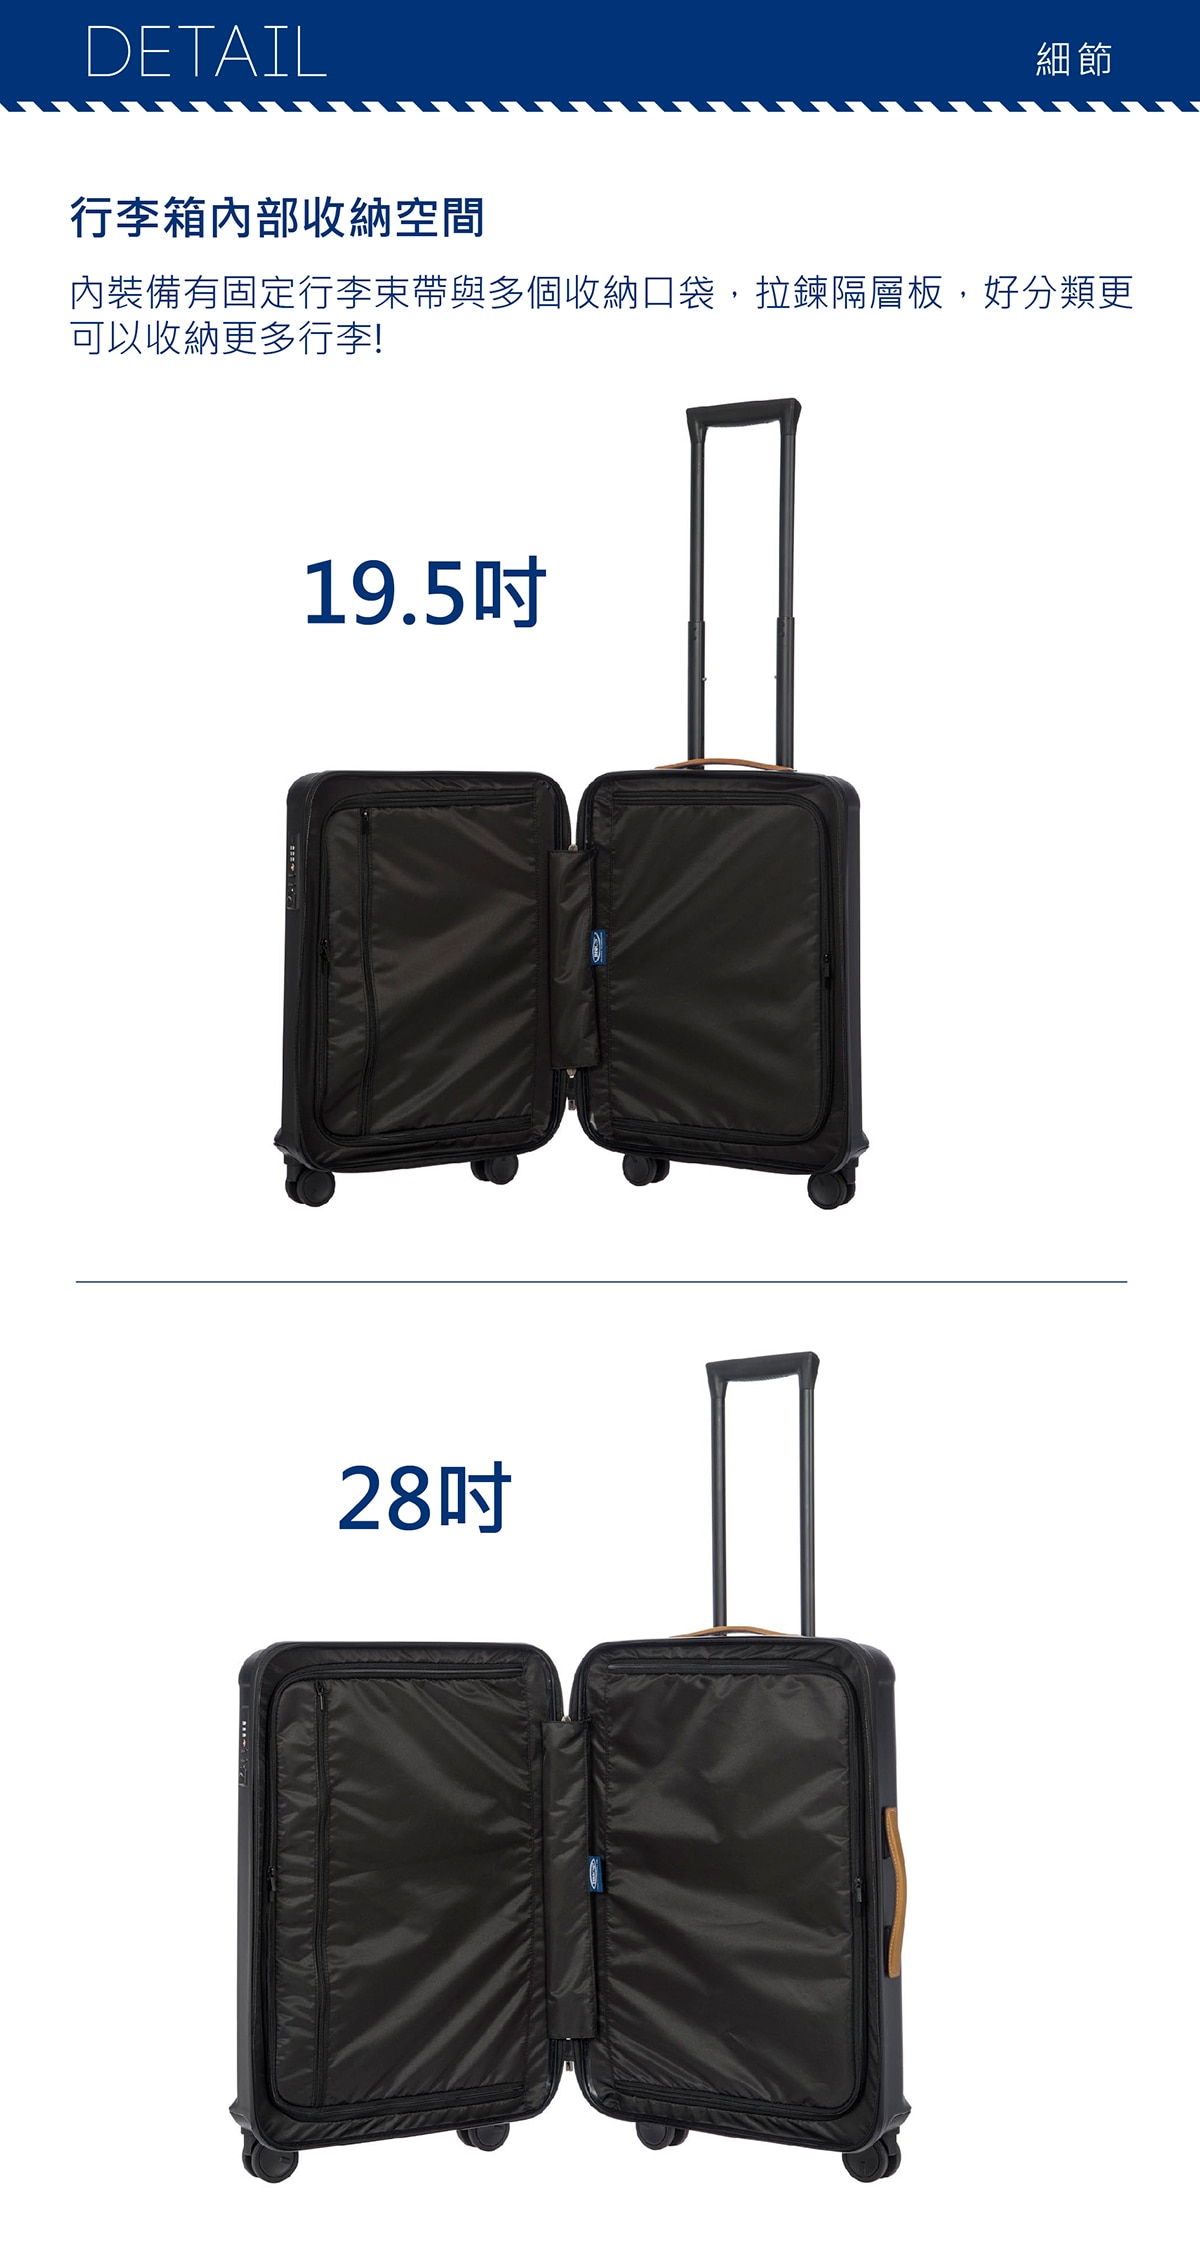 BRIC'S 27吋深藍色行李箱,行李箱拉桿,多段式鋁製拉桿,可根據身高與喜好調整高度,拉桿可收納外觀更簡潔,輕量又堅固,收納空間,本款行李箱有兩個拉鏈隔層,內部收納空間超大,還附有拉鏈袋及X束衣帶,方便又實用.